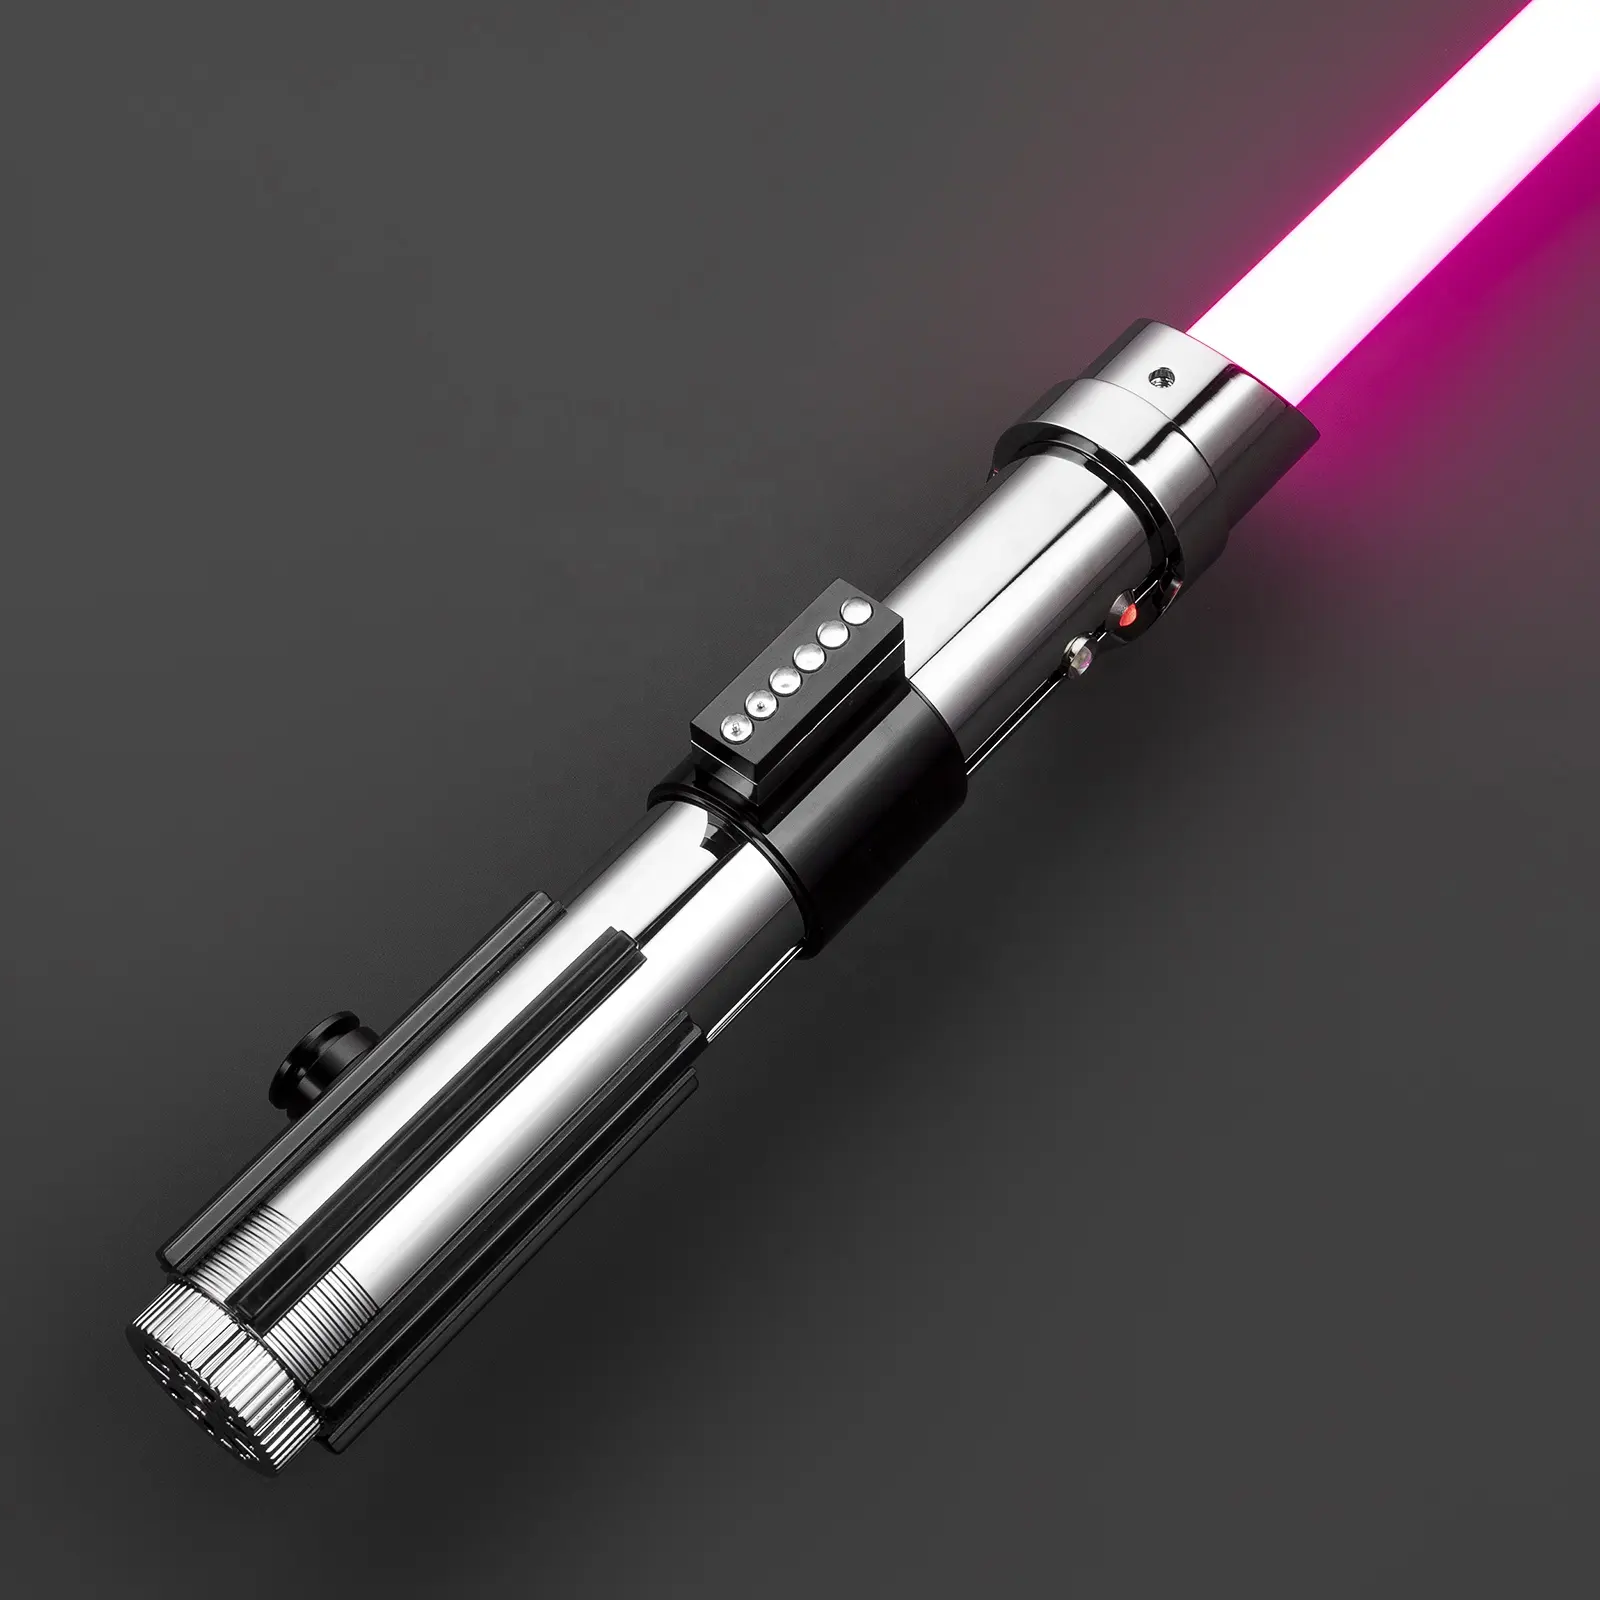 LGT Saberstudio metal Anakin Skywalker lightsaber hilt heavy durable blade infinite color changing laser sword for star the wars